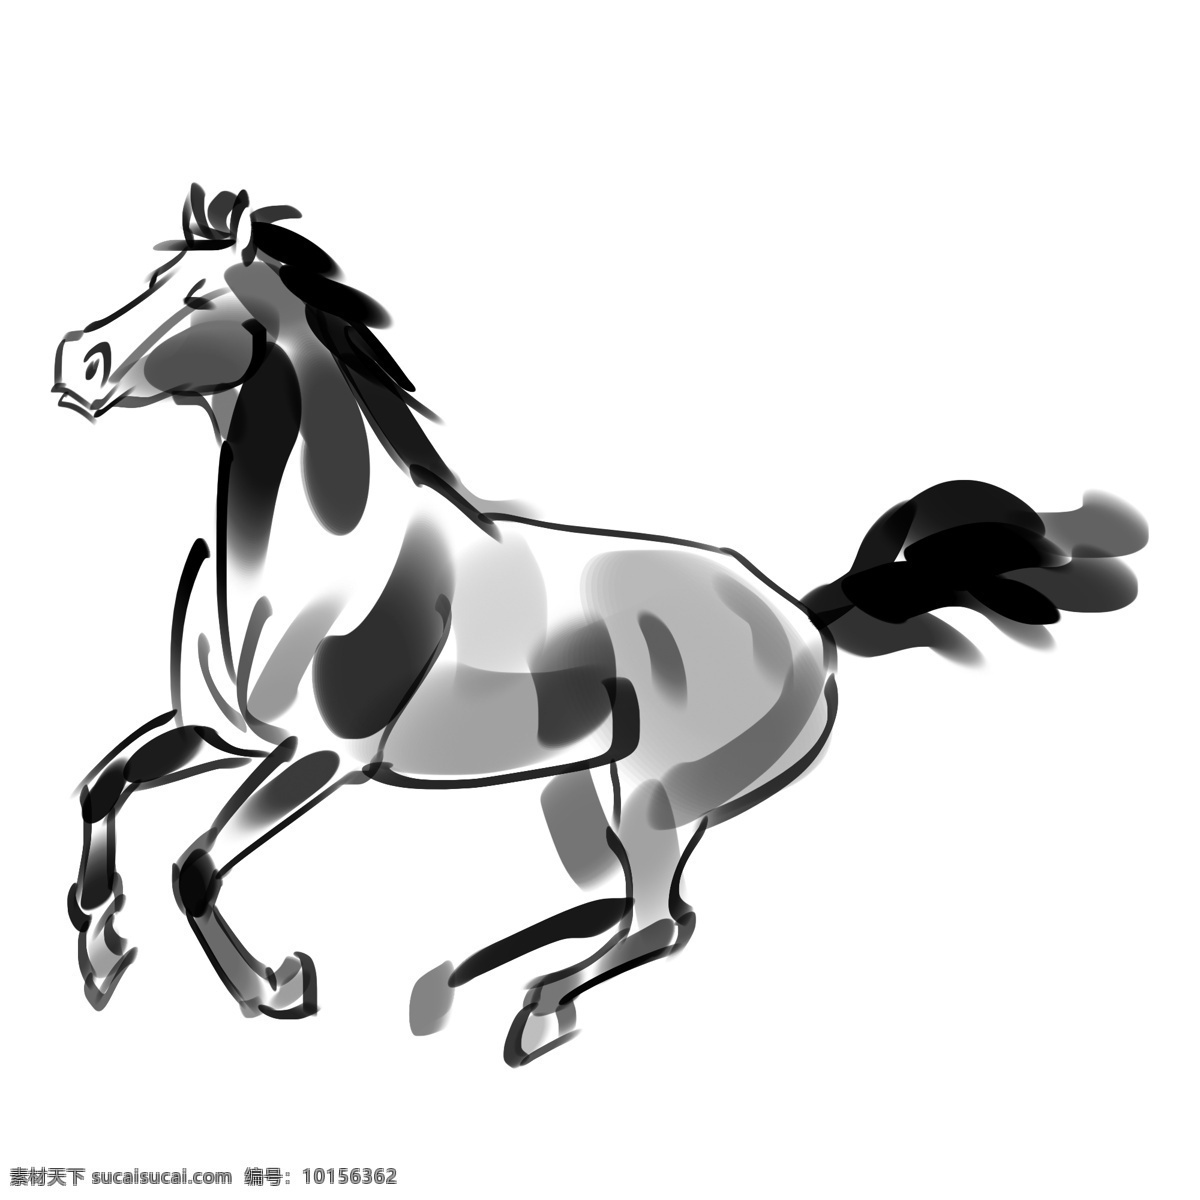 手绘 奔跑 马 插画 手绘奔马 奔马插画 黑色奔马 动物马 水墨马 卡通奔马